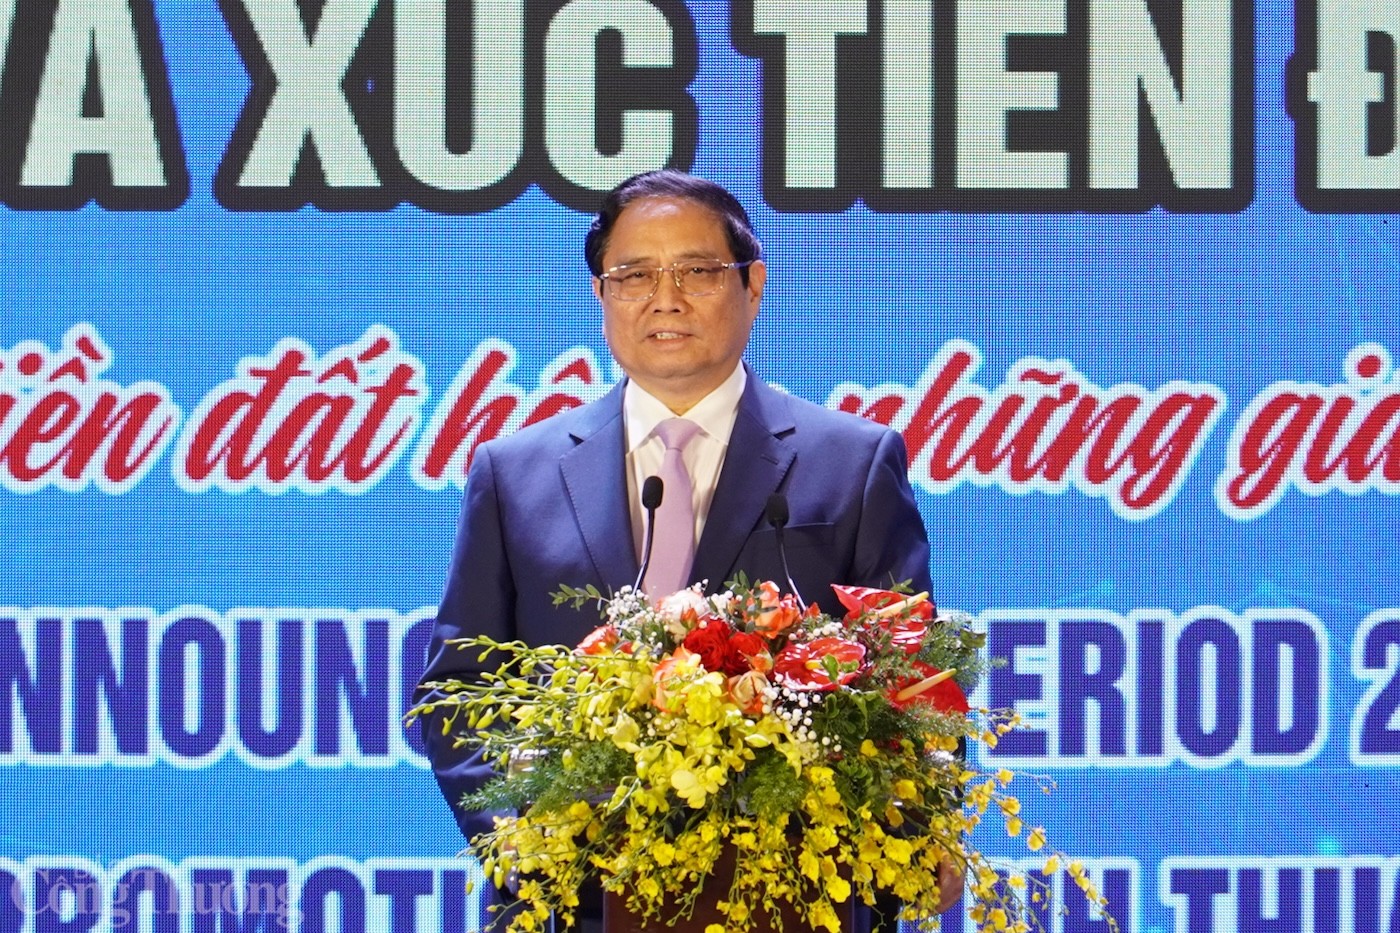 Thủ tướng Phạm Minh Chính: Ninh Thuận phát triển kinh tế theo hướng xanh, số, tuần hoàn